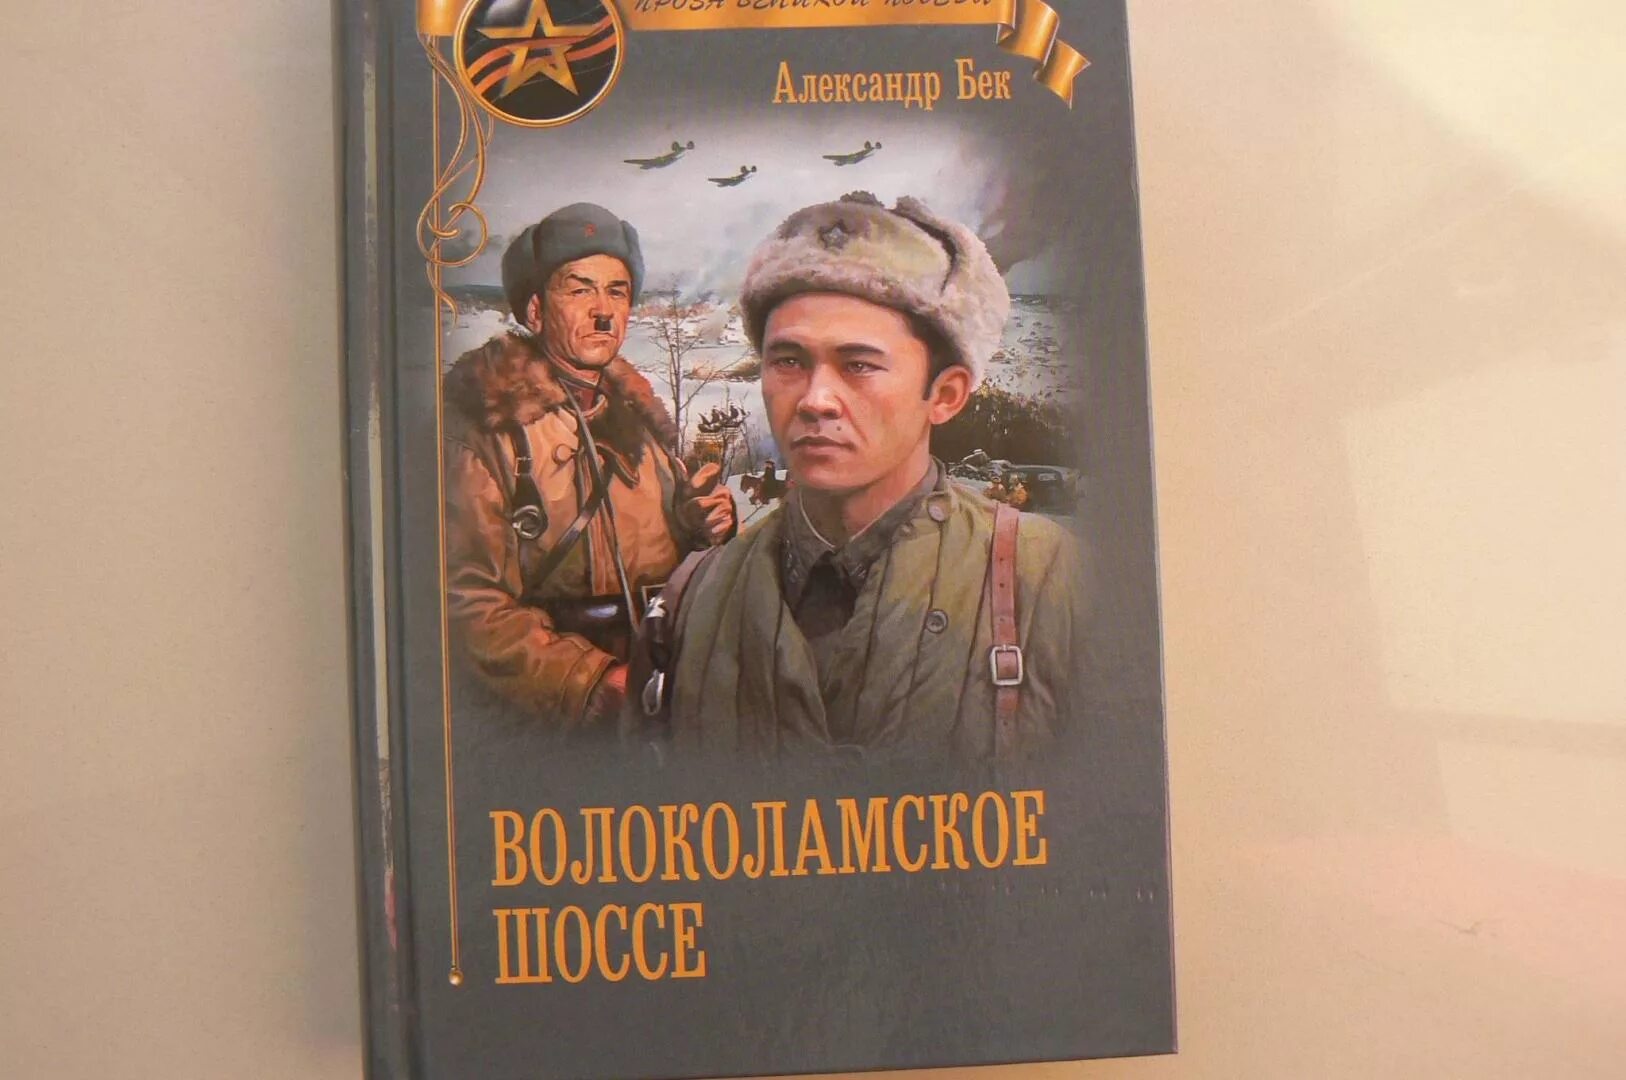 А. Бек «Волоколамское шоссе» (1944). Бек Волоколамское шоссе книга.